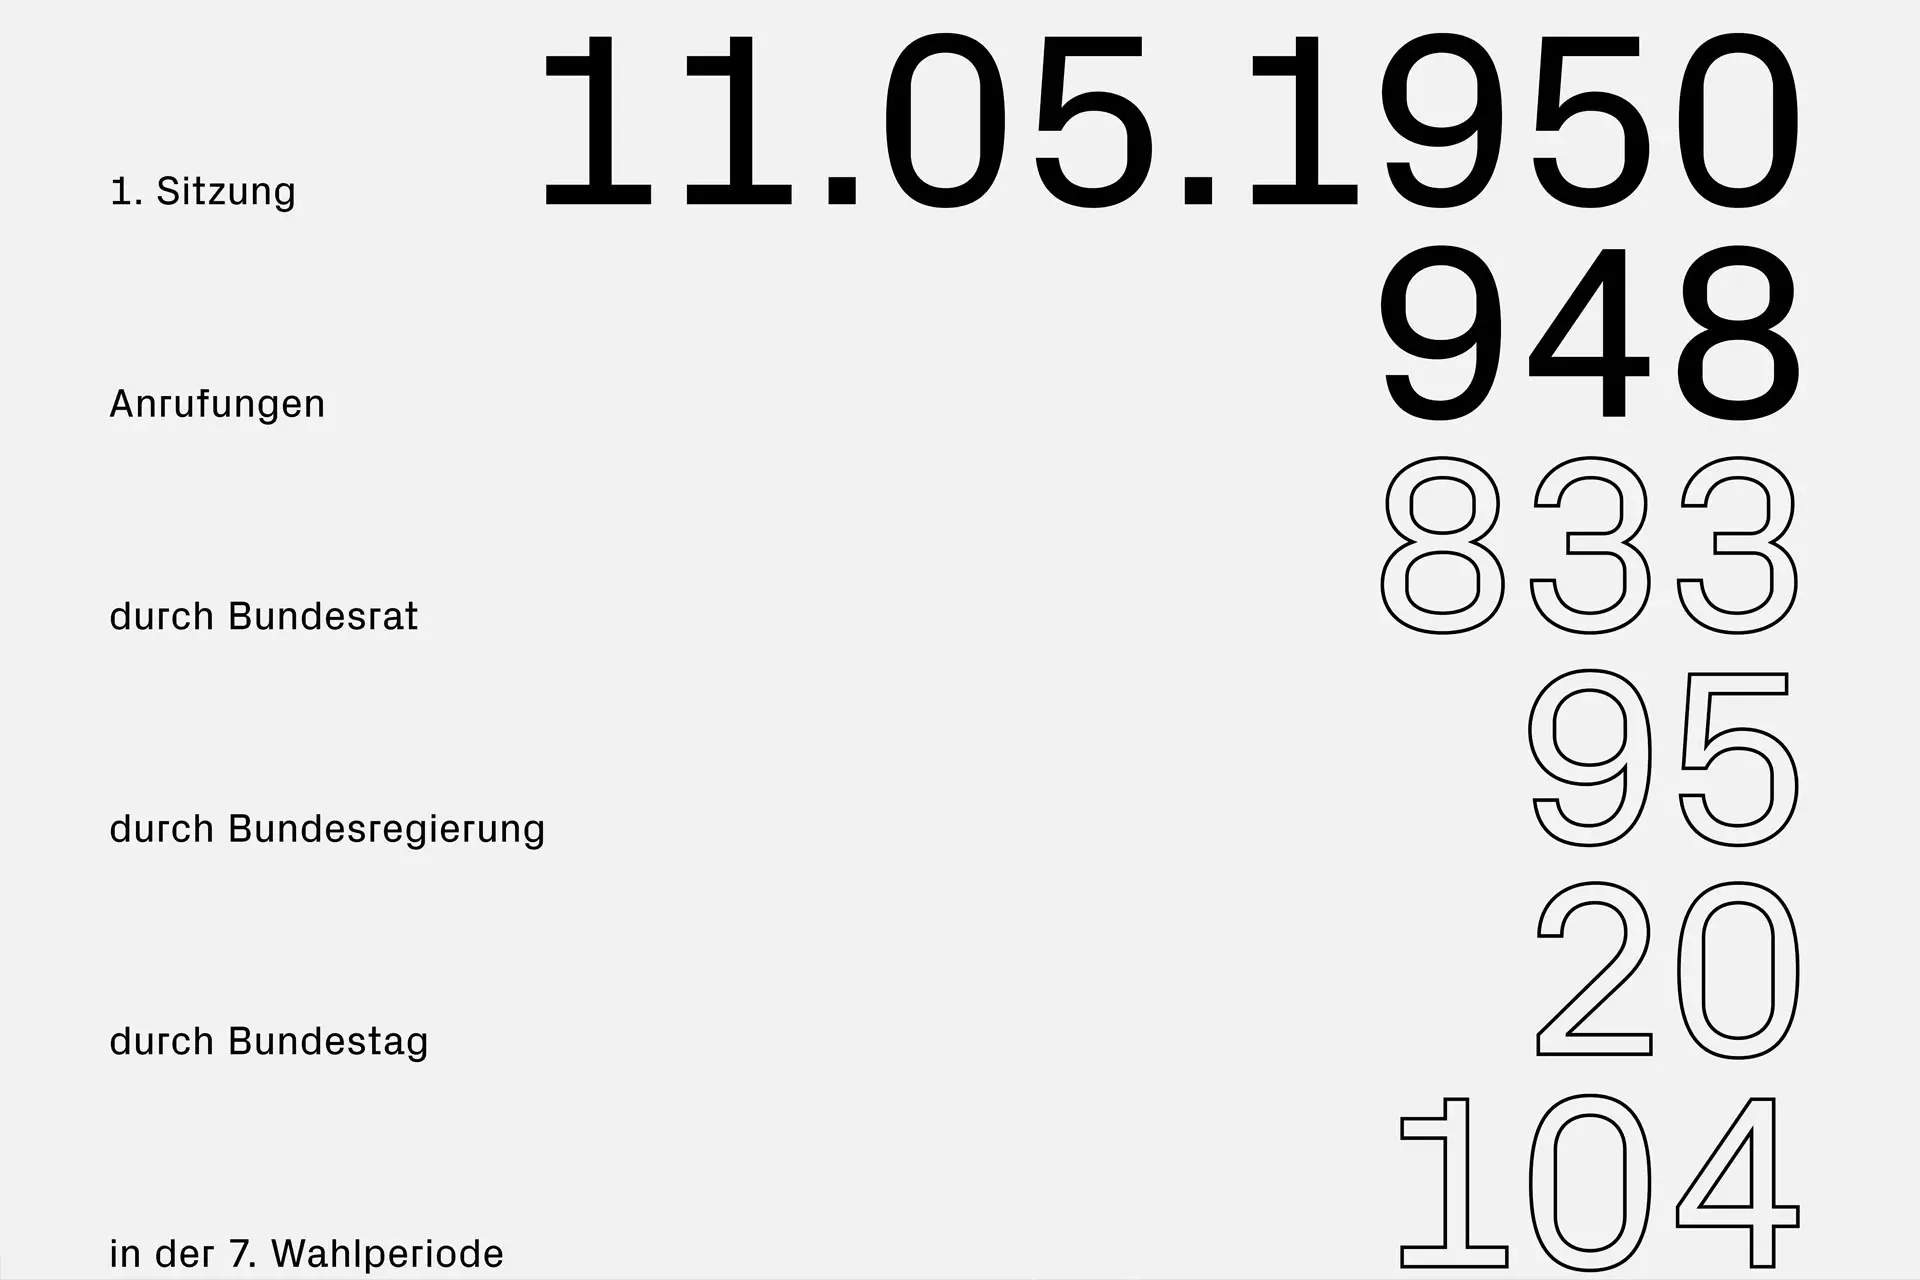 Detailansicht mit Infografik »Vermittlungsausschuss in Zahlen« © Diemer & Schweig Designstudio